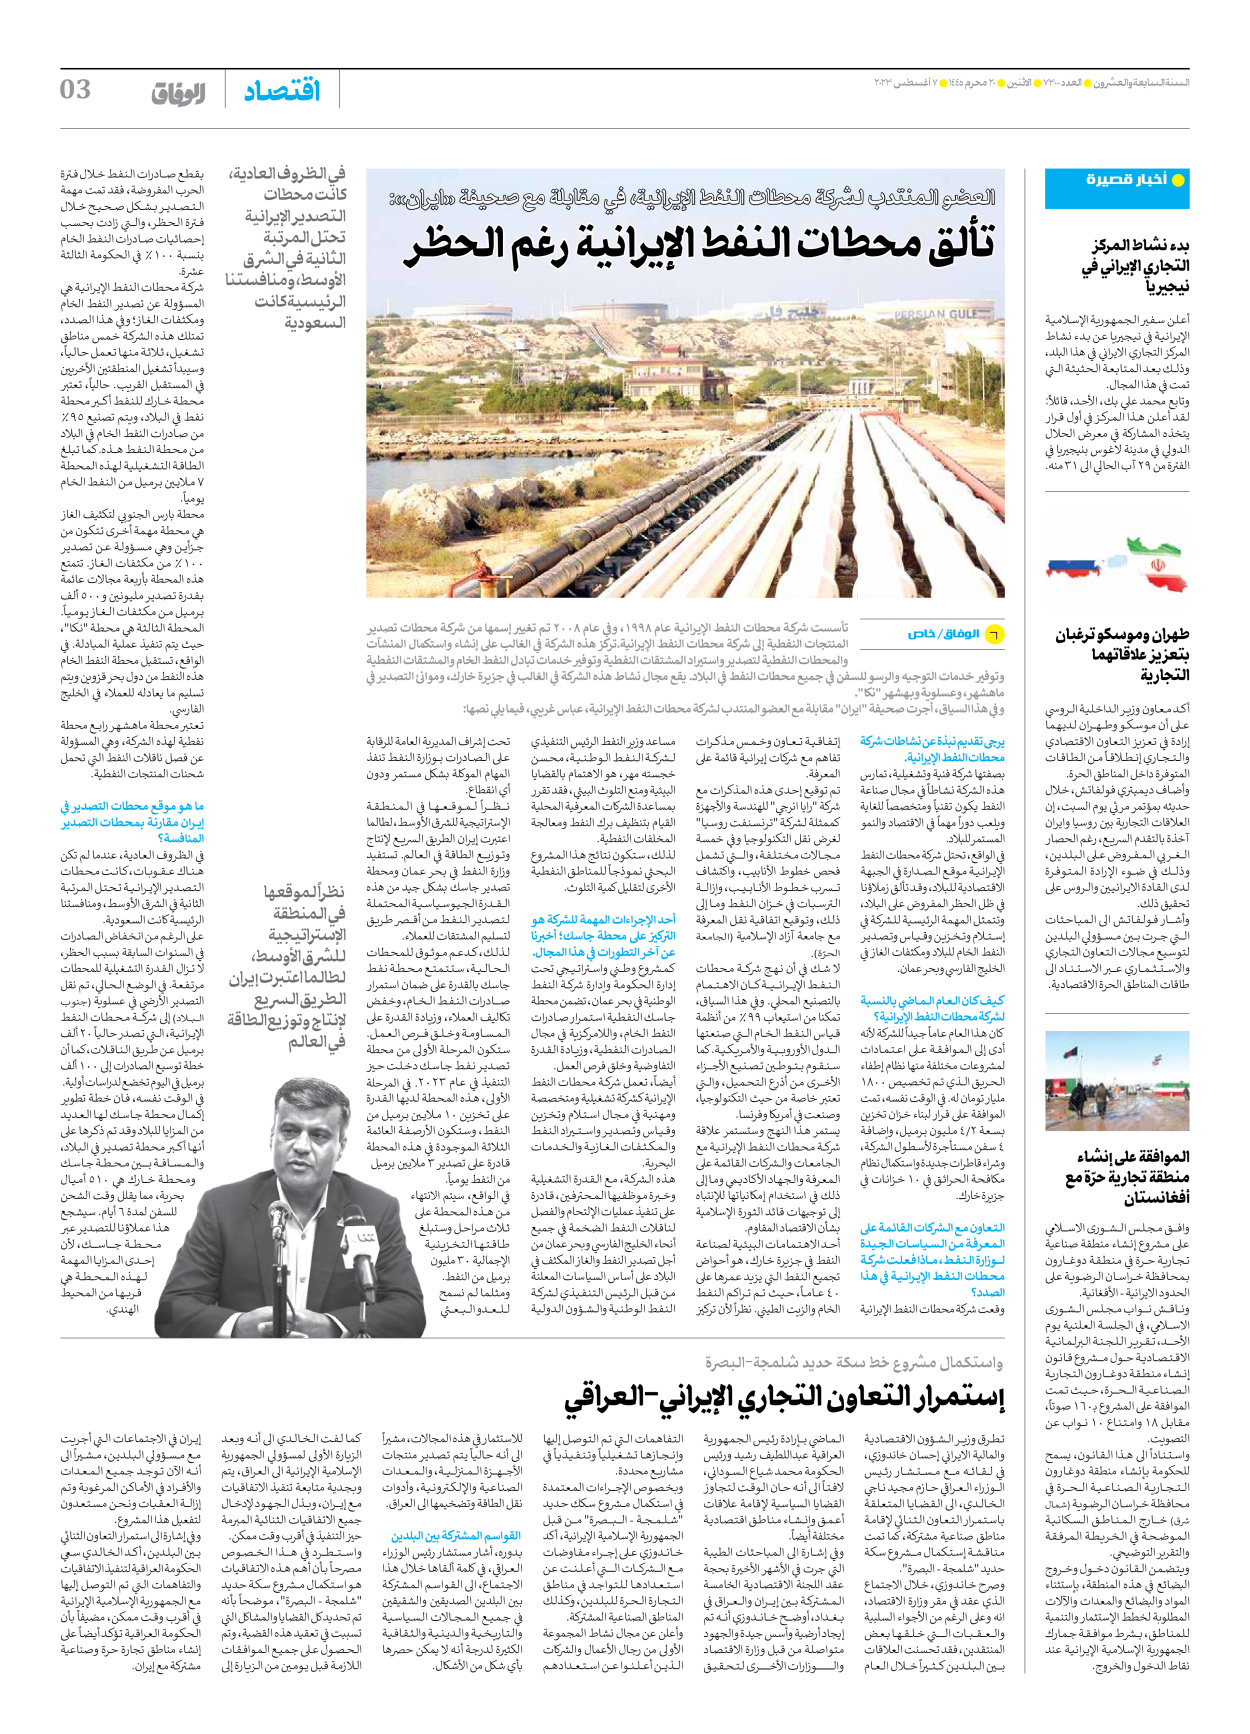 صحیفة ایران الدولیة الوفاق - العدد سبعة آلاف وثلاثمائة - ٠٧ أغسطس ٢٠٢٣ - الصفحة ۳